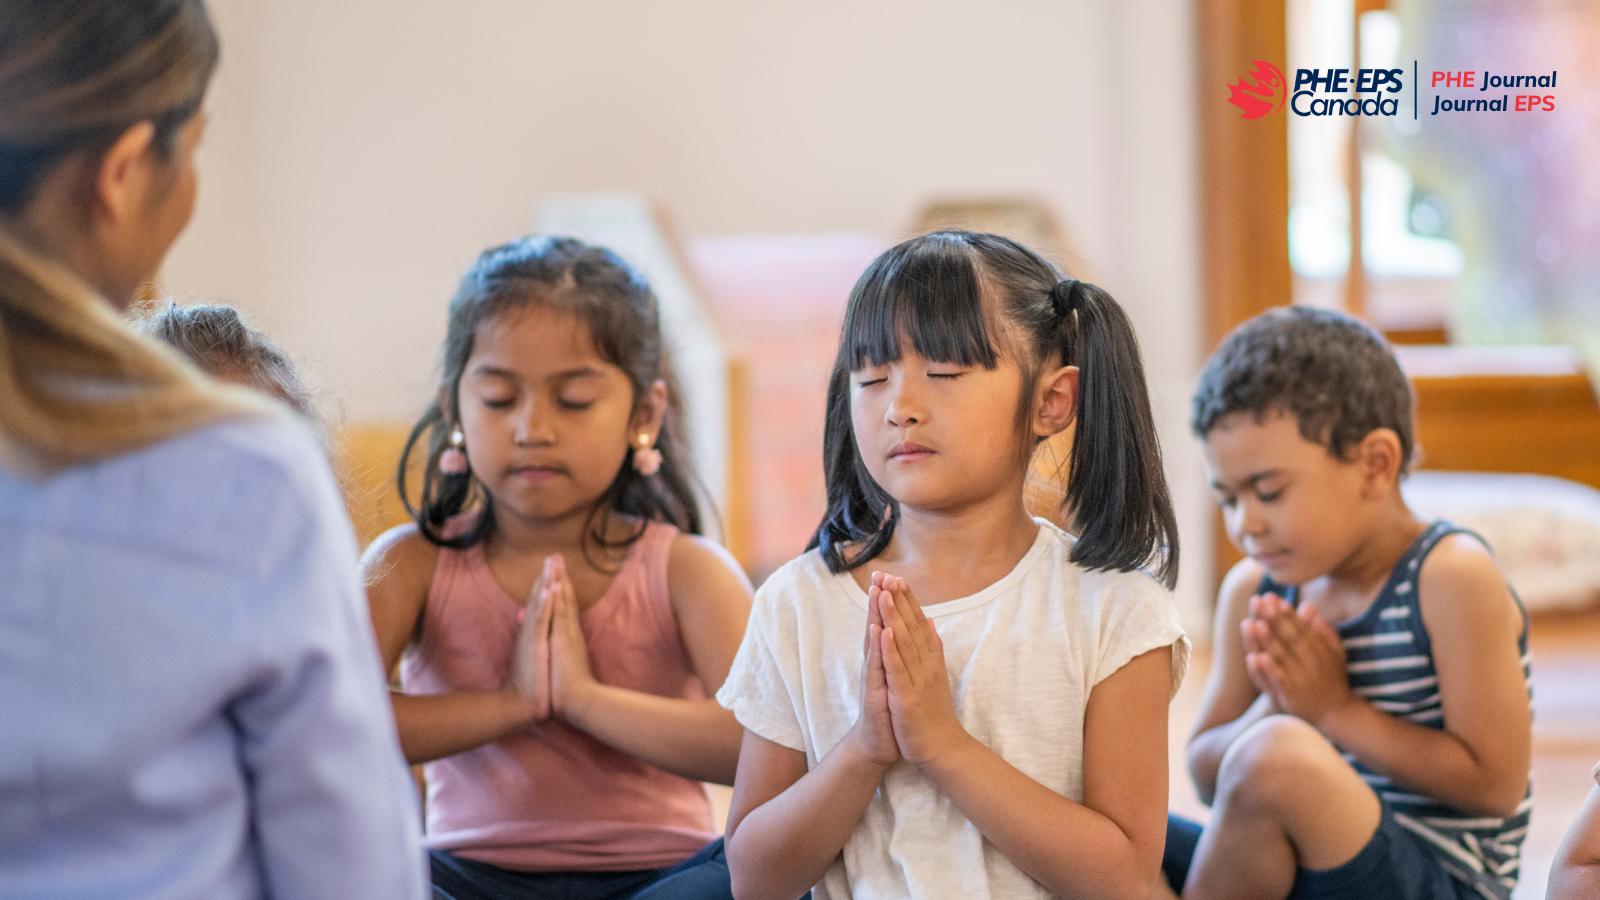 L'image montre trois enfants qui pratiquent la pleine conscience en priant devant leurs professeurs, les yeux fermés.